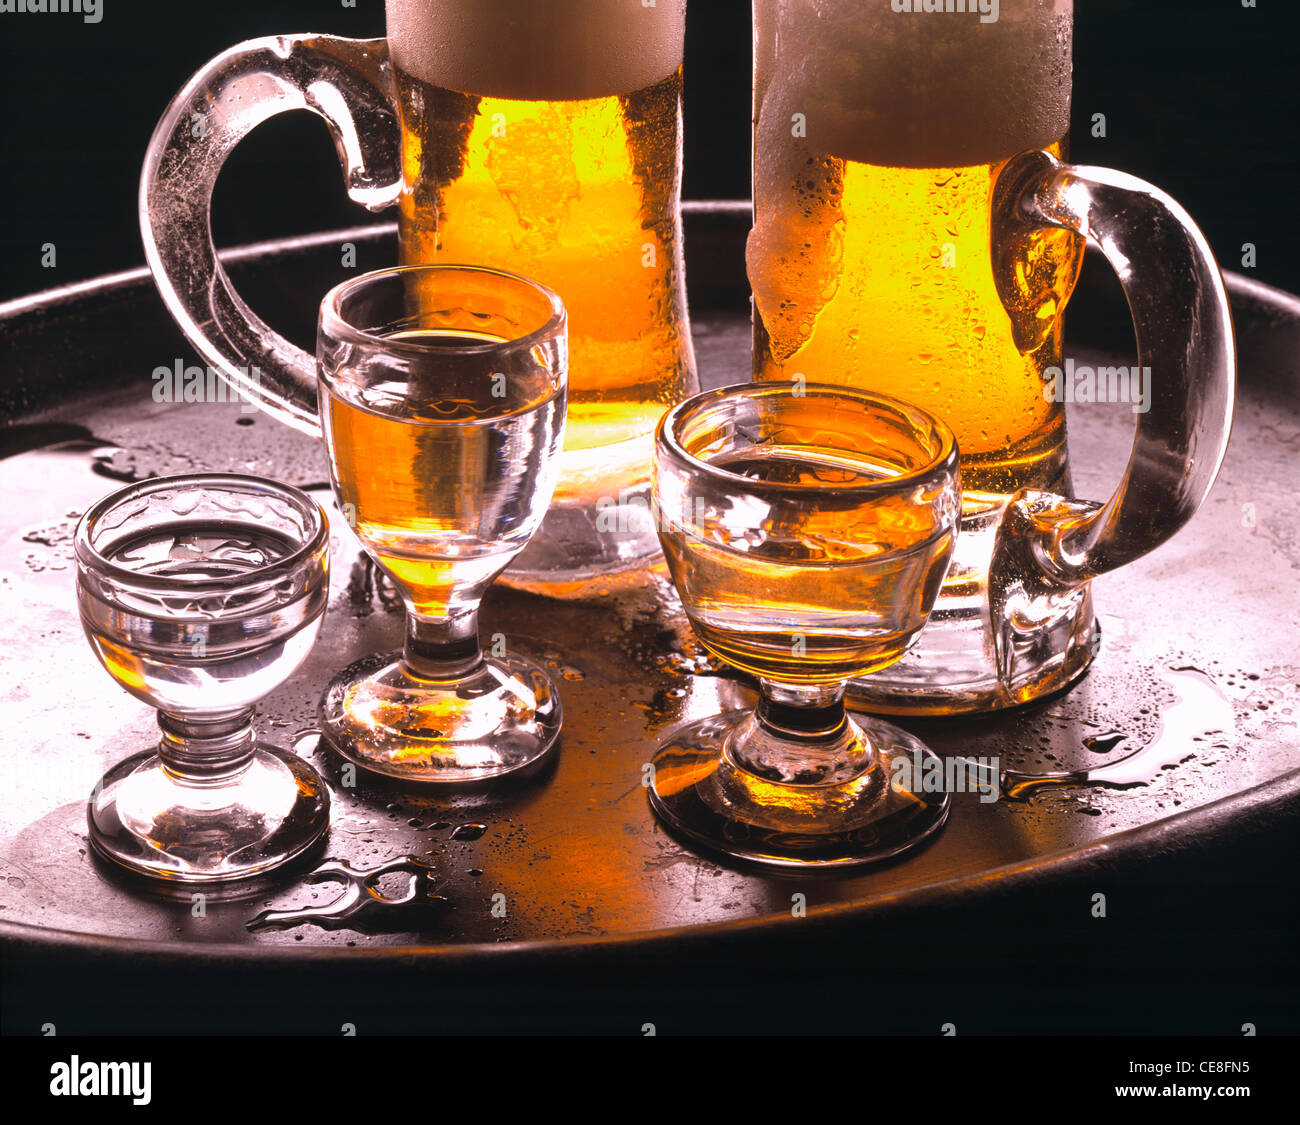 Dennoch: Bier und Schnaps Stockfotografie - Alamy